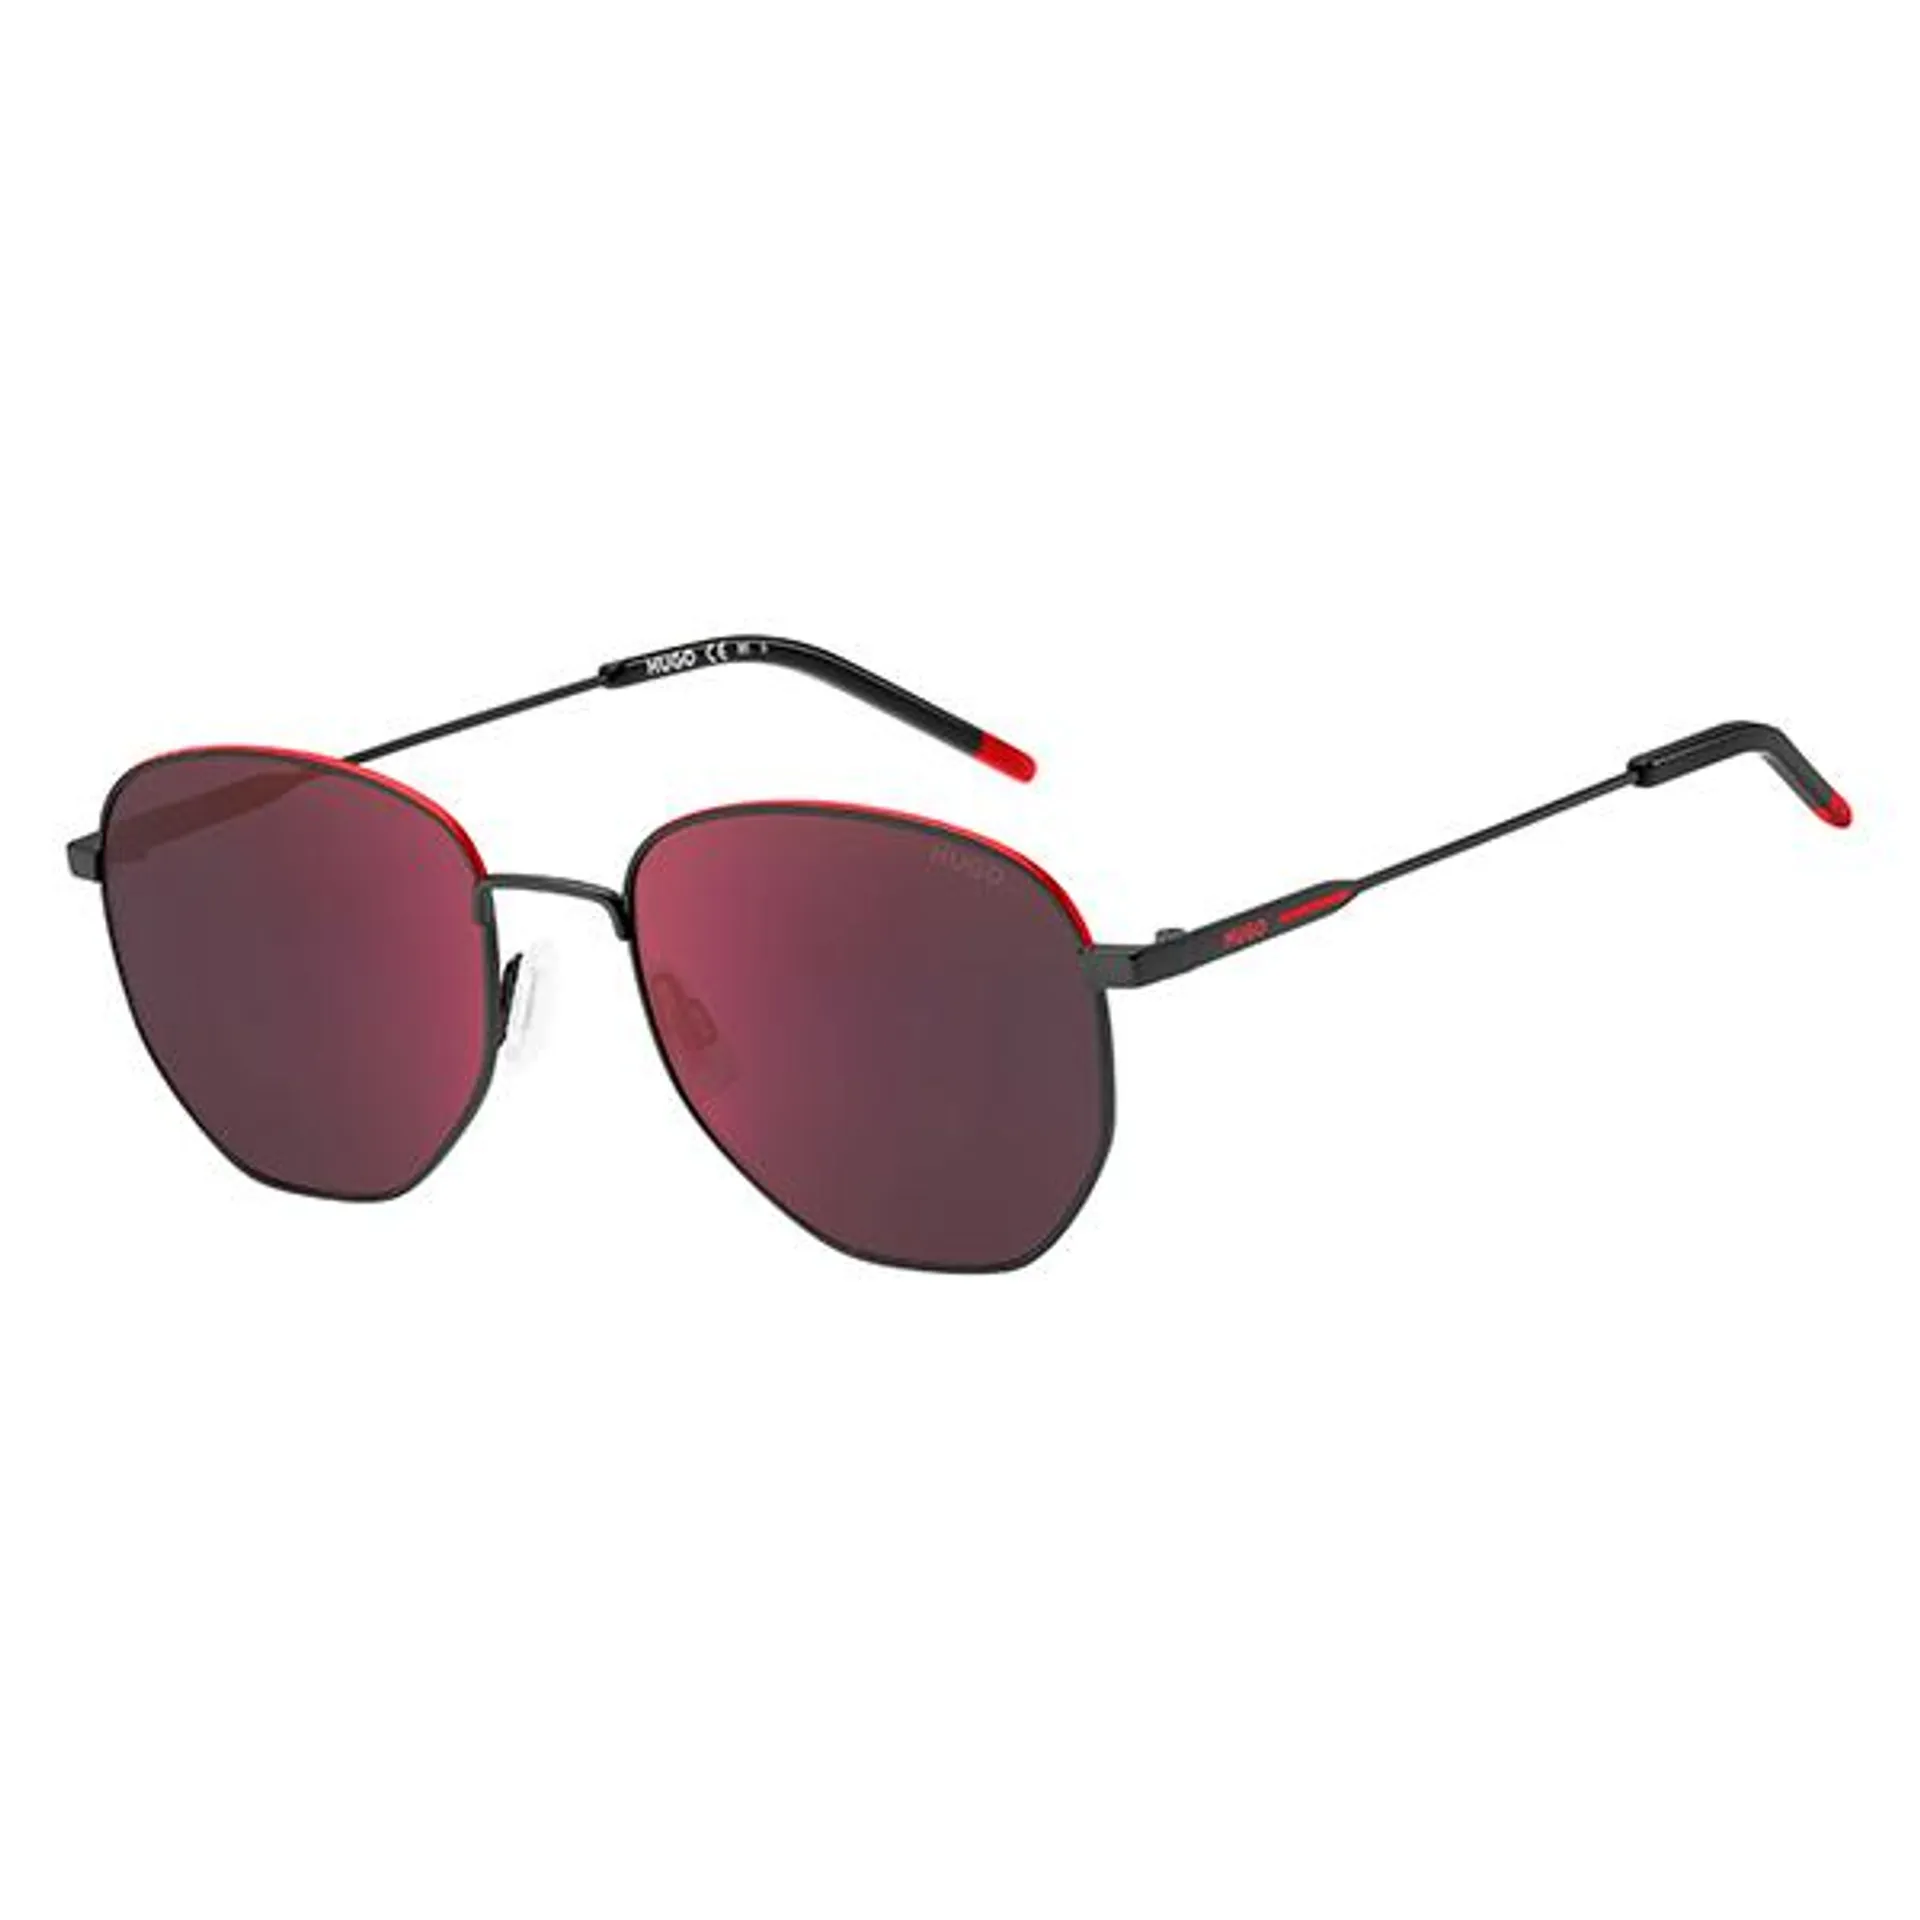 Hugo Boss Men's Matte Red Sunglasses